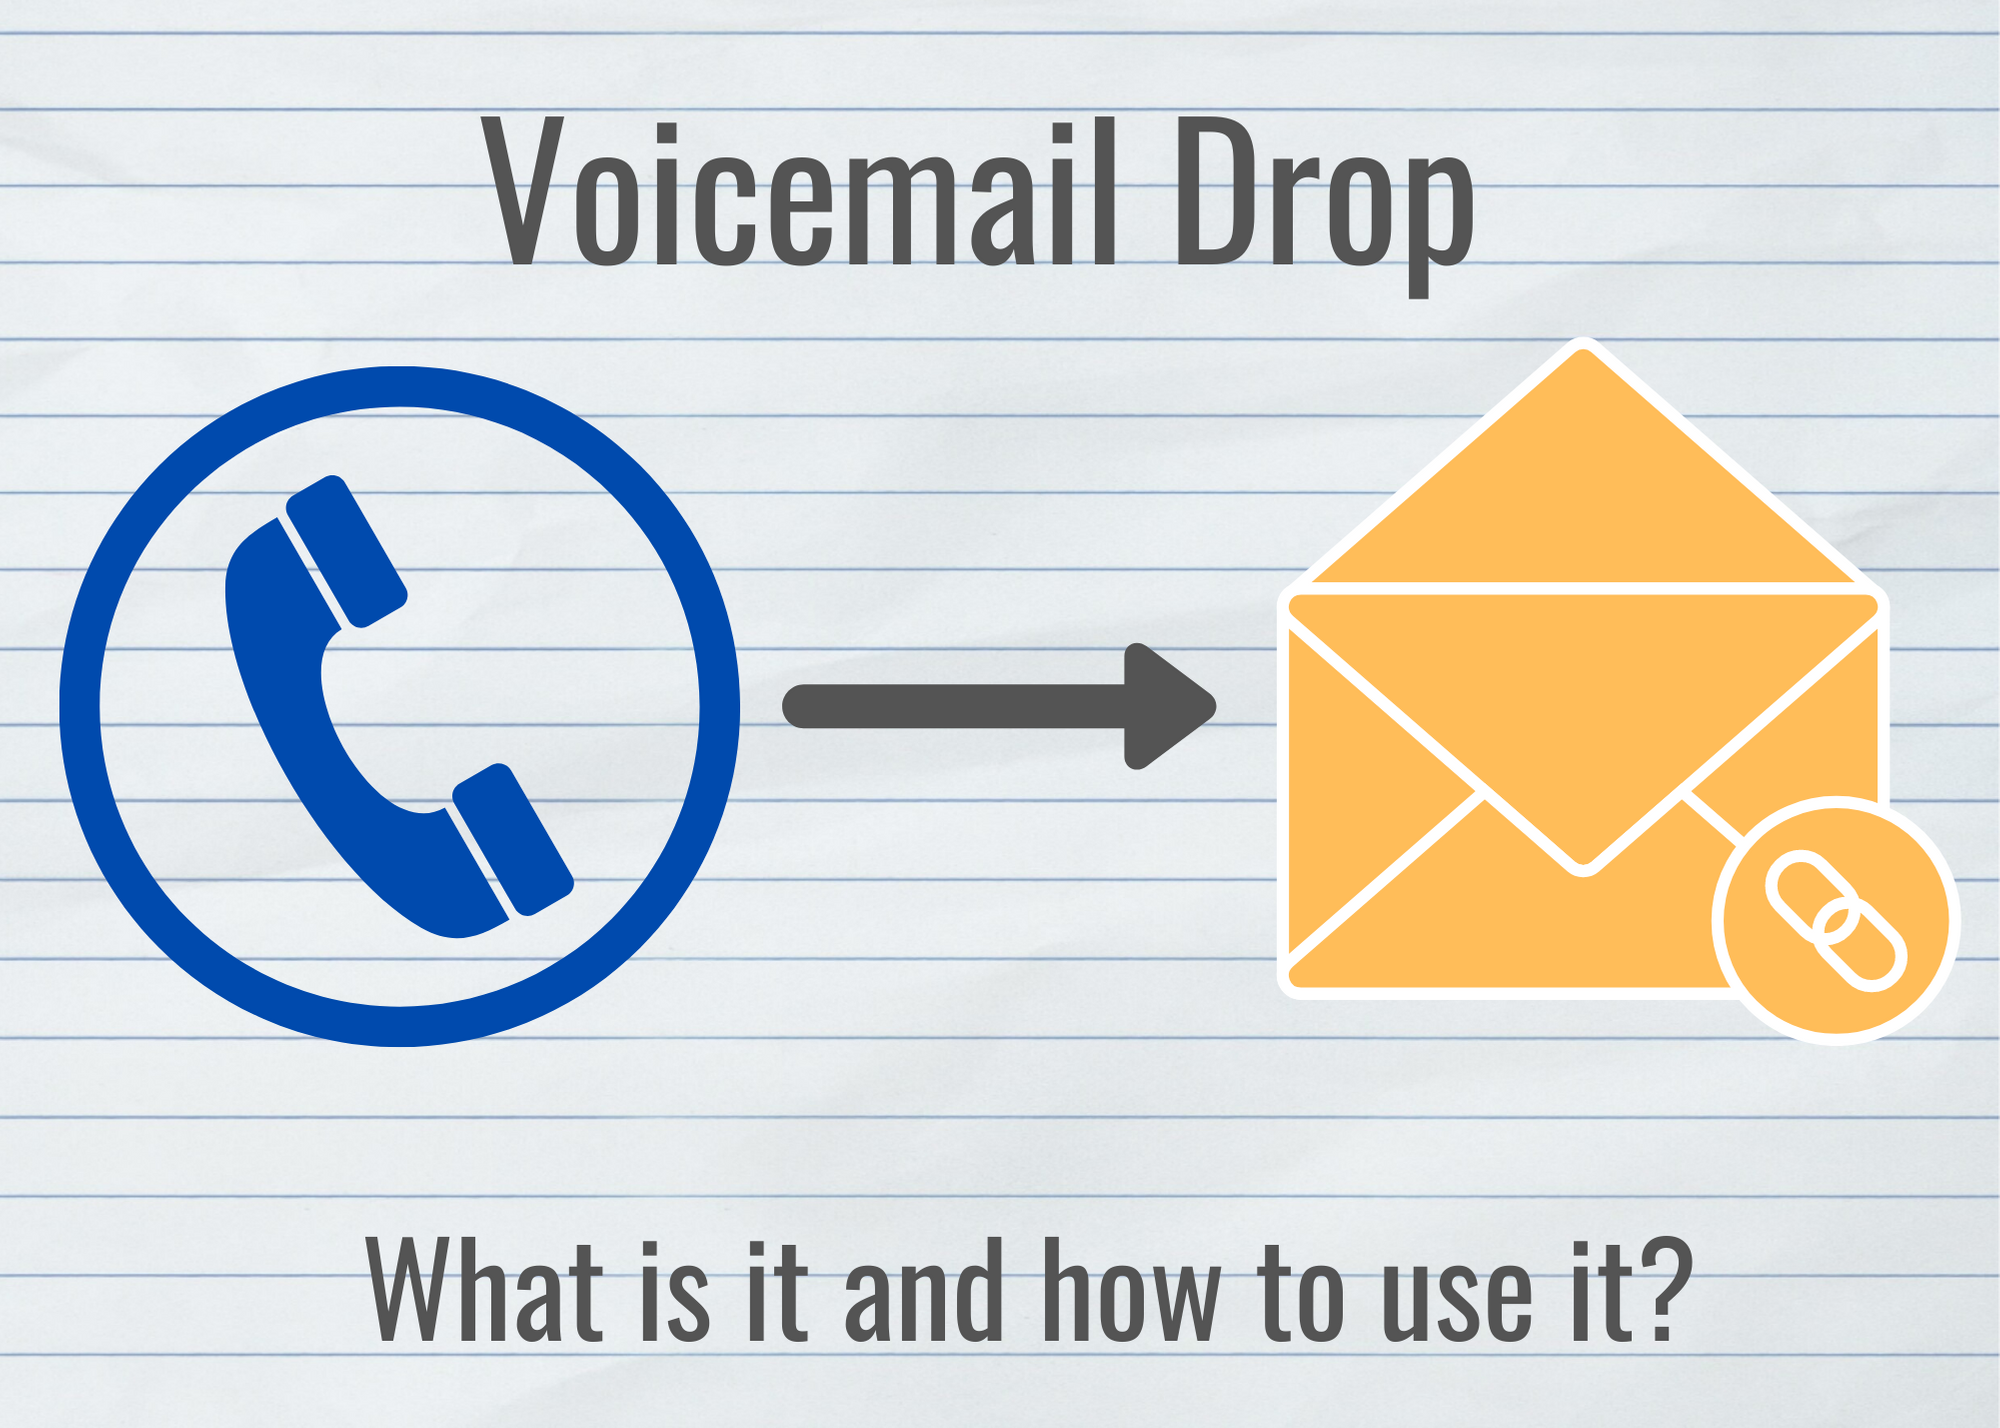 Voicemail Drop